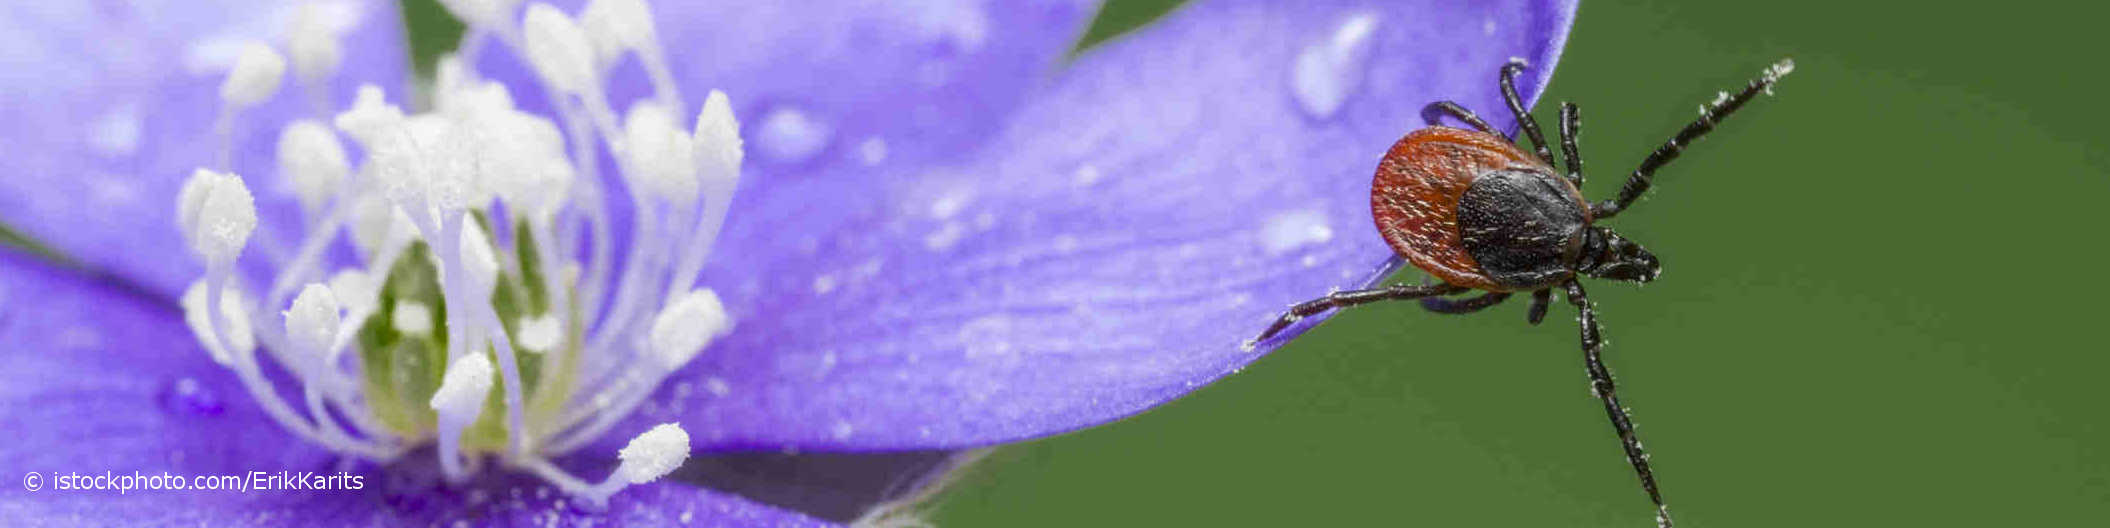 Borreliose übertragende Zecke sitzt am Rand eines blauen Blütenblattes